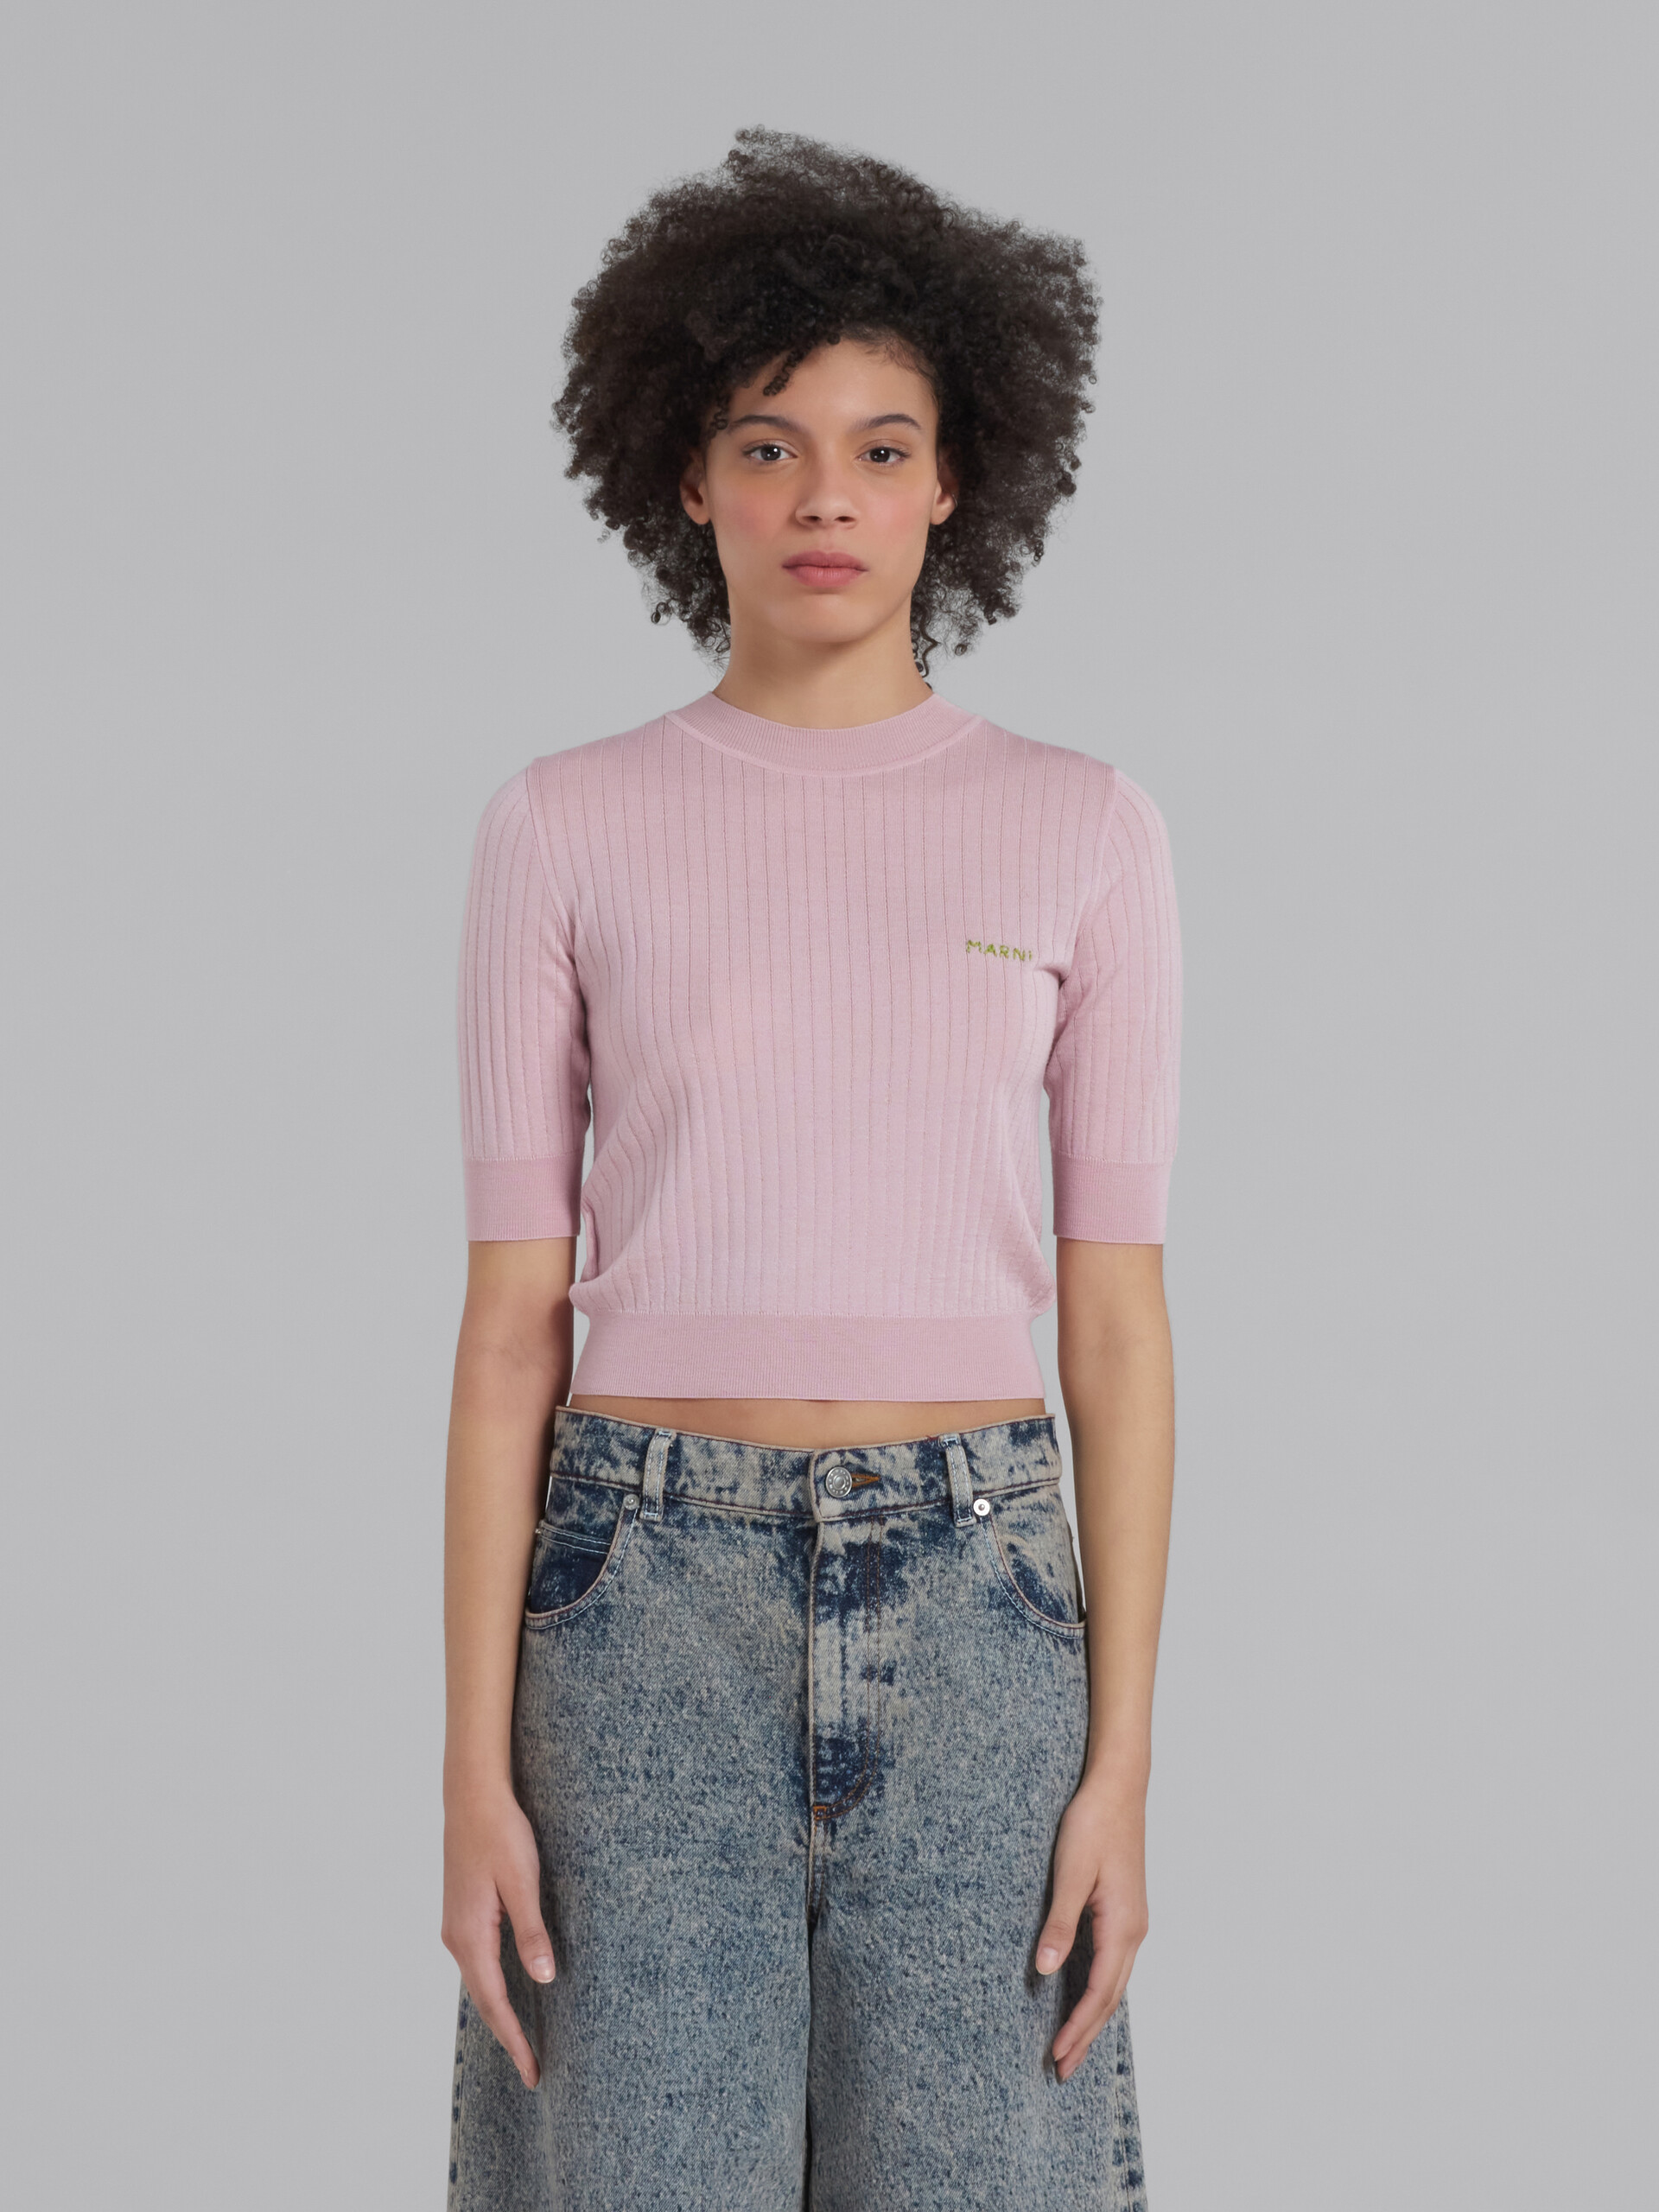 Rosafarbener, gerippter Pullover aus Wolle und Seide - Pullover - Image 2